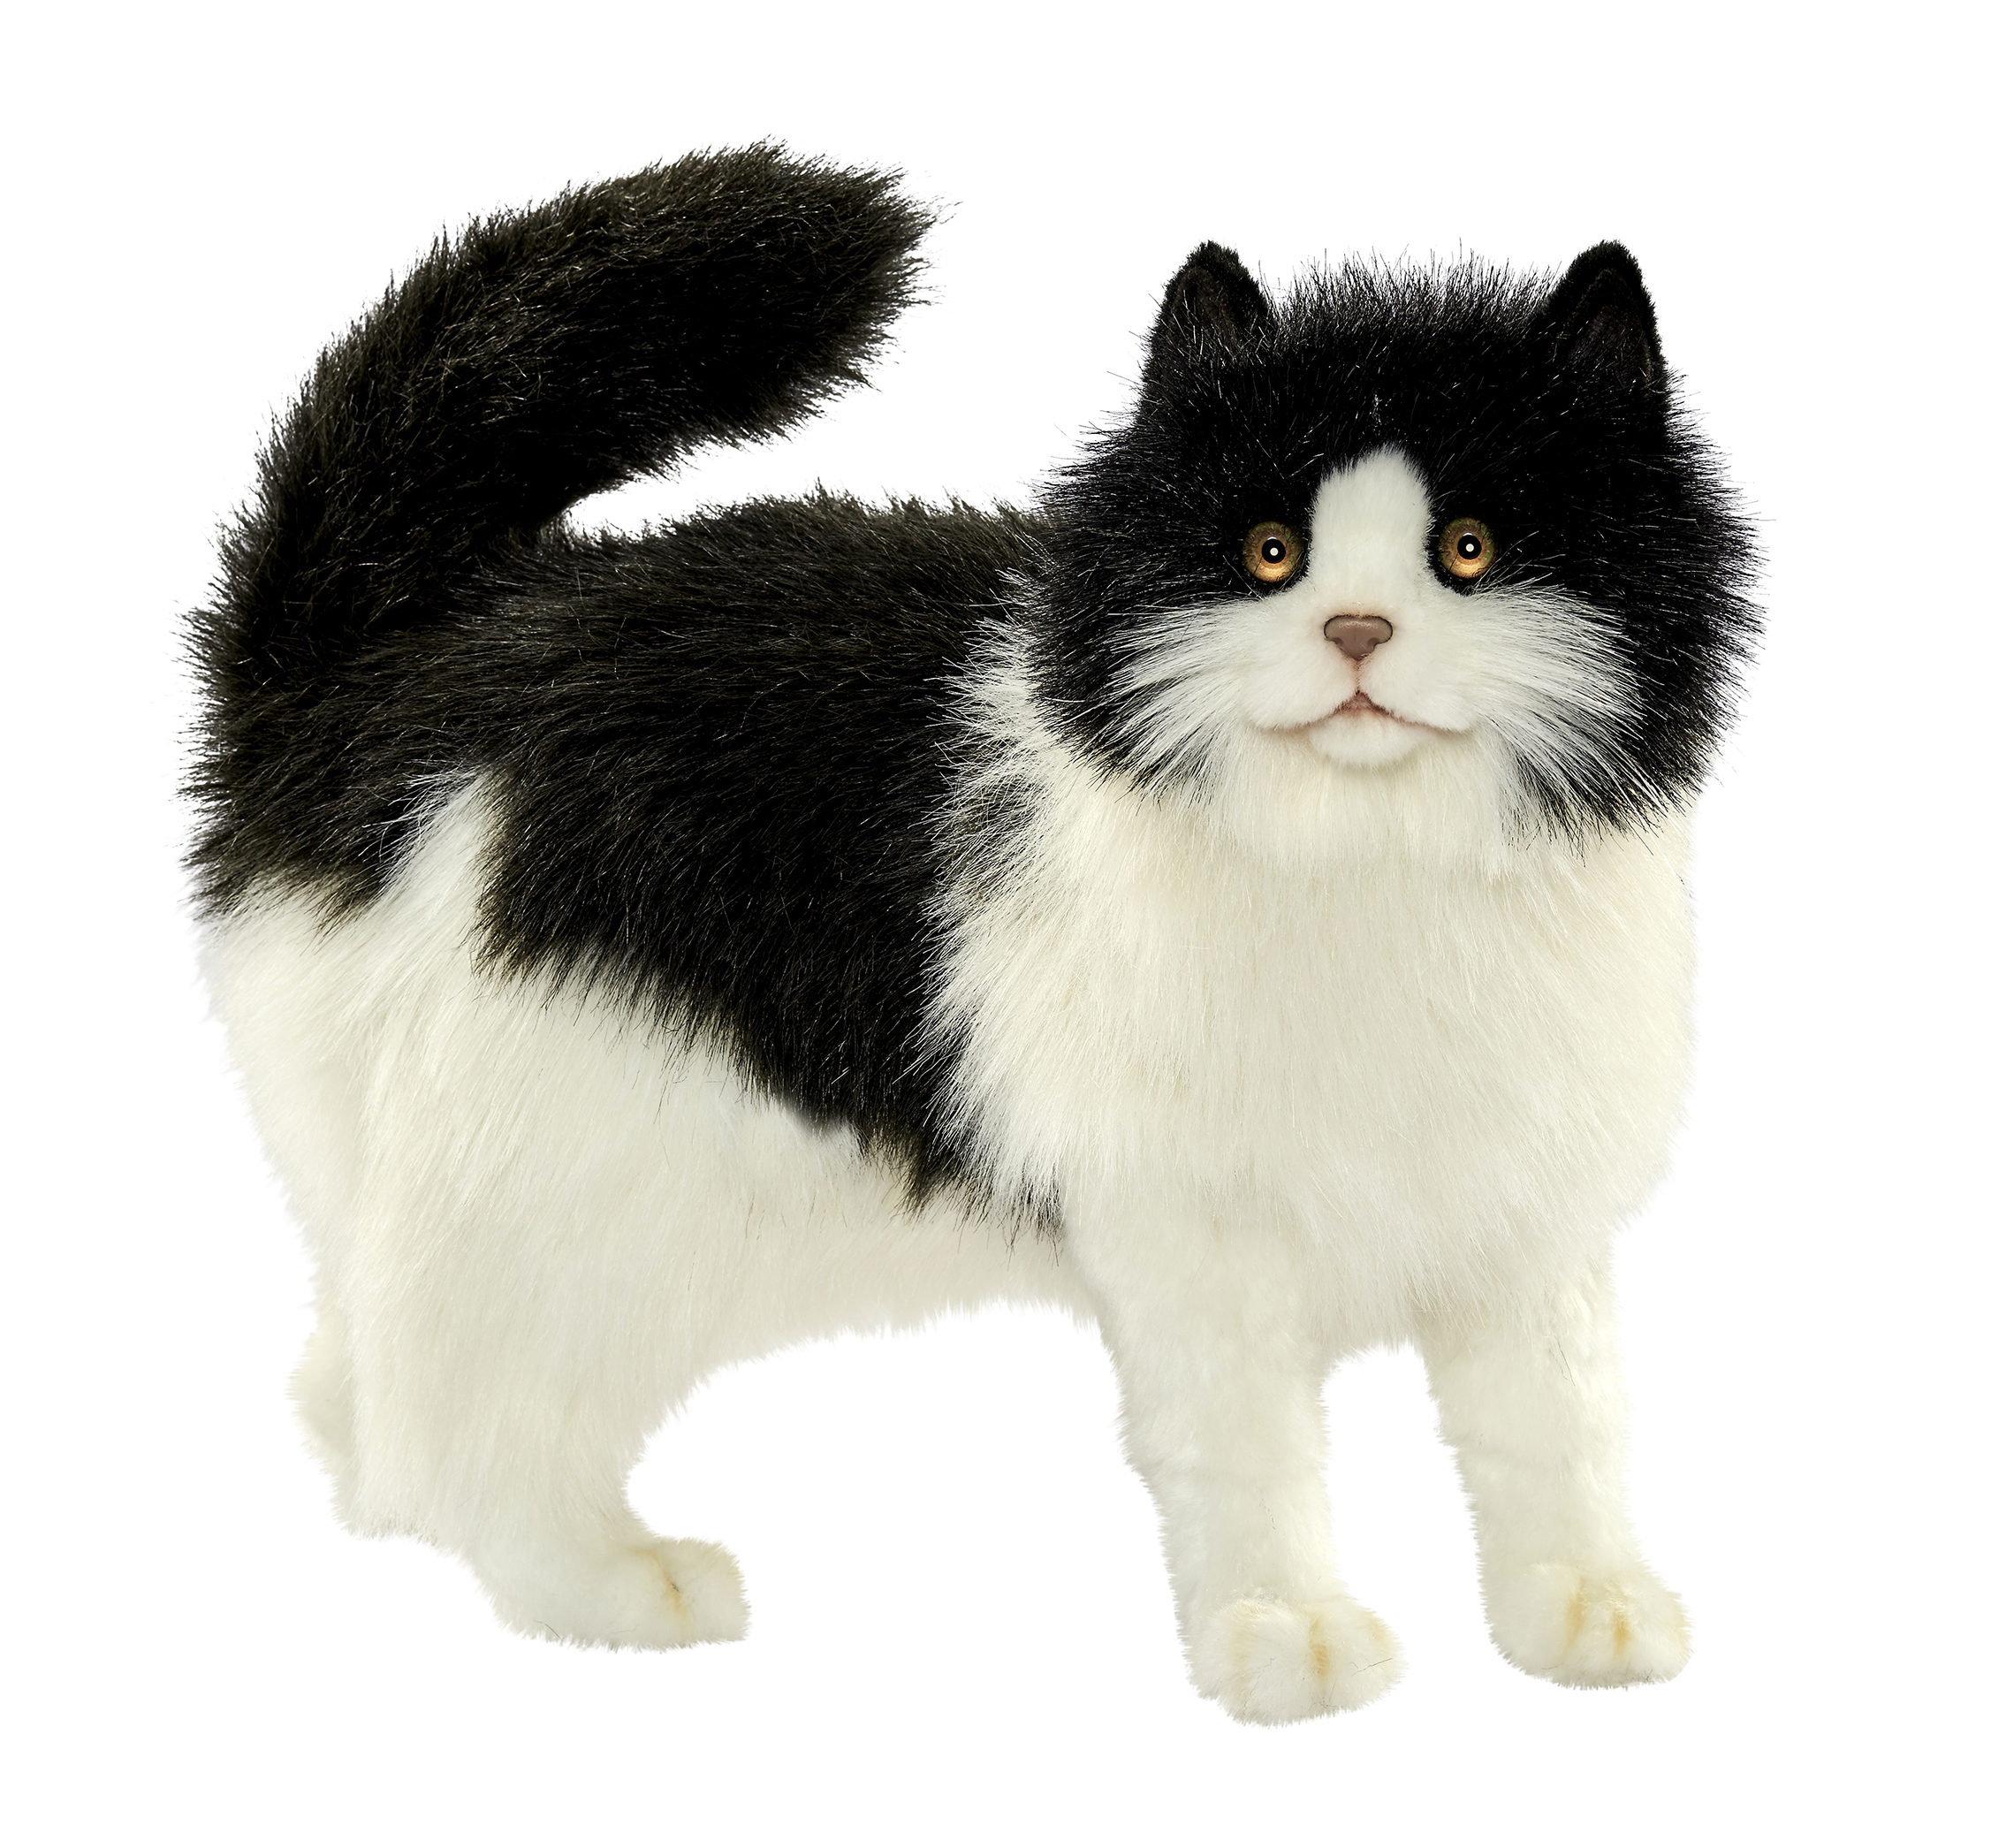 Кошка мягкая купить. Реалистичная мягкая игрушка Hansa Creation кошка черно-белая, 40 см. Мягкая игрушка кот Ханса. Hansa Creation кошка. Игрушка кошка реалистичная Hansa черно белая.